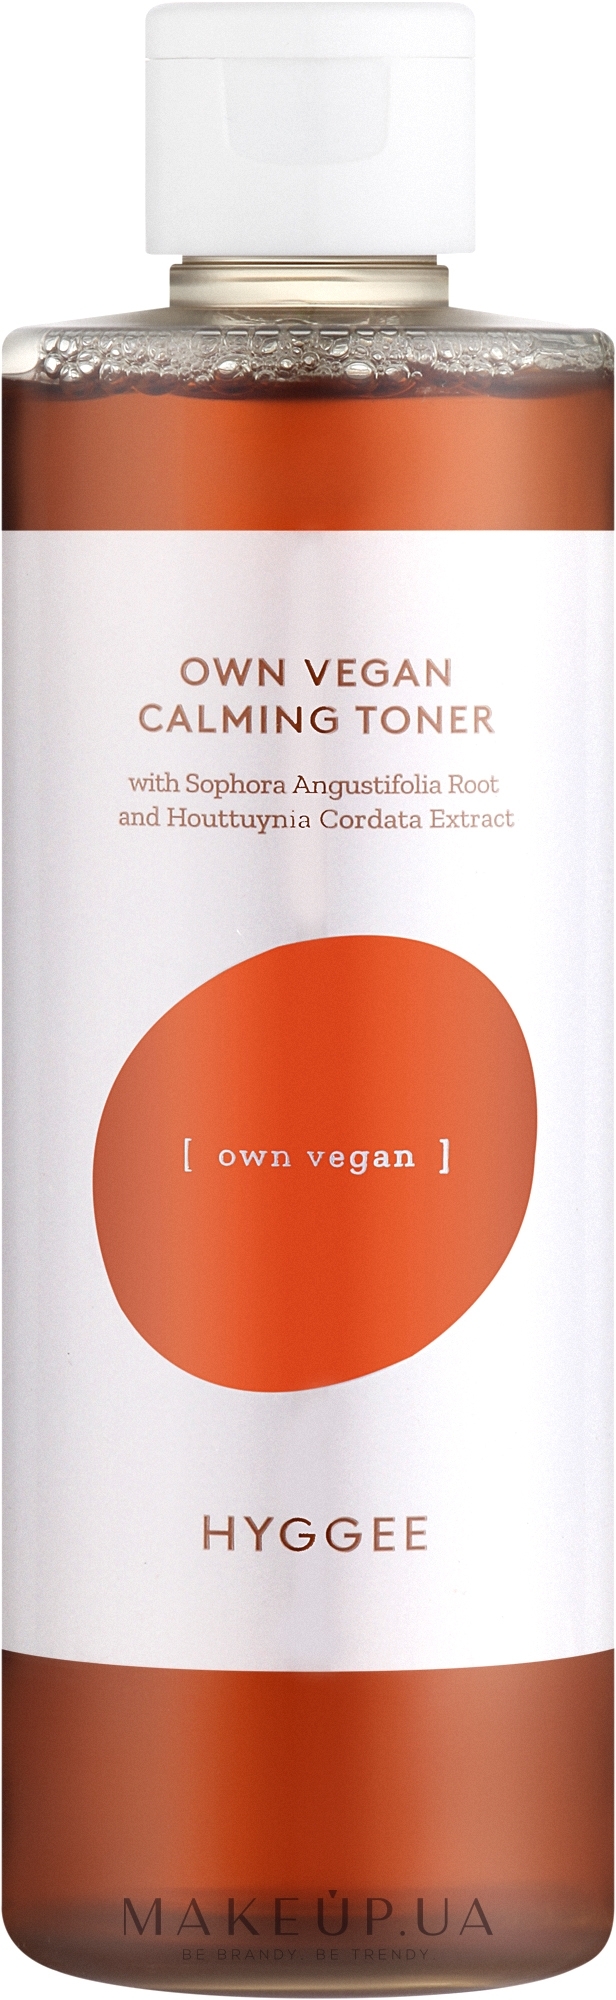 Успокаивающий и смягчающий веганский тонер - Hyggee Own Vegan Calming Toner — фото 250ml